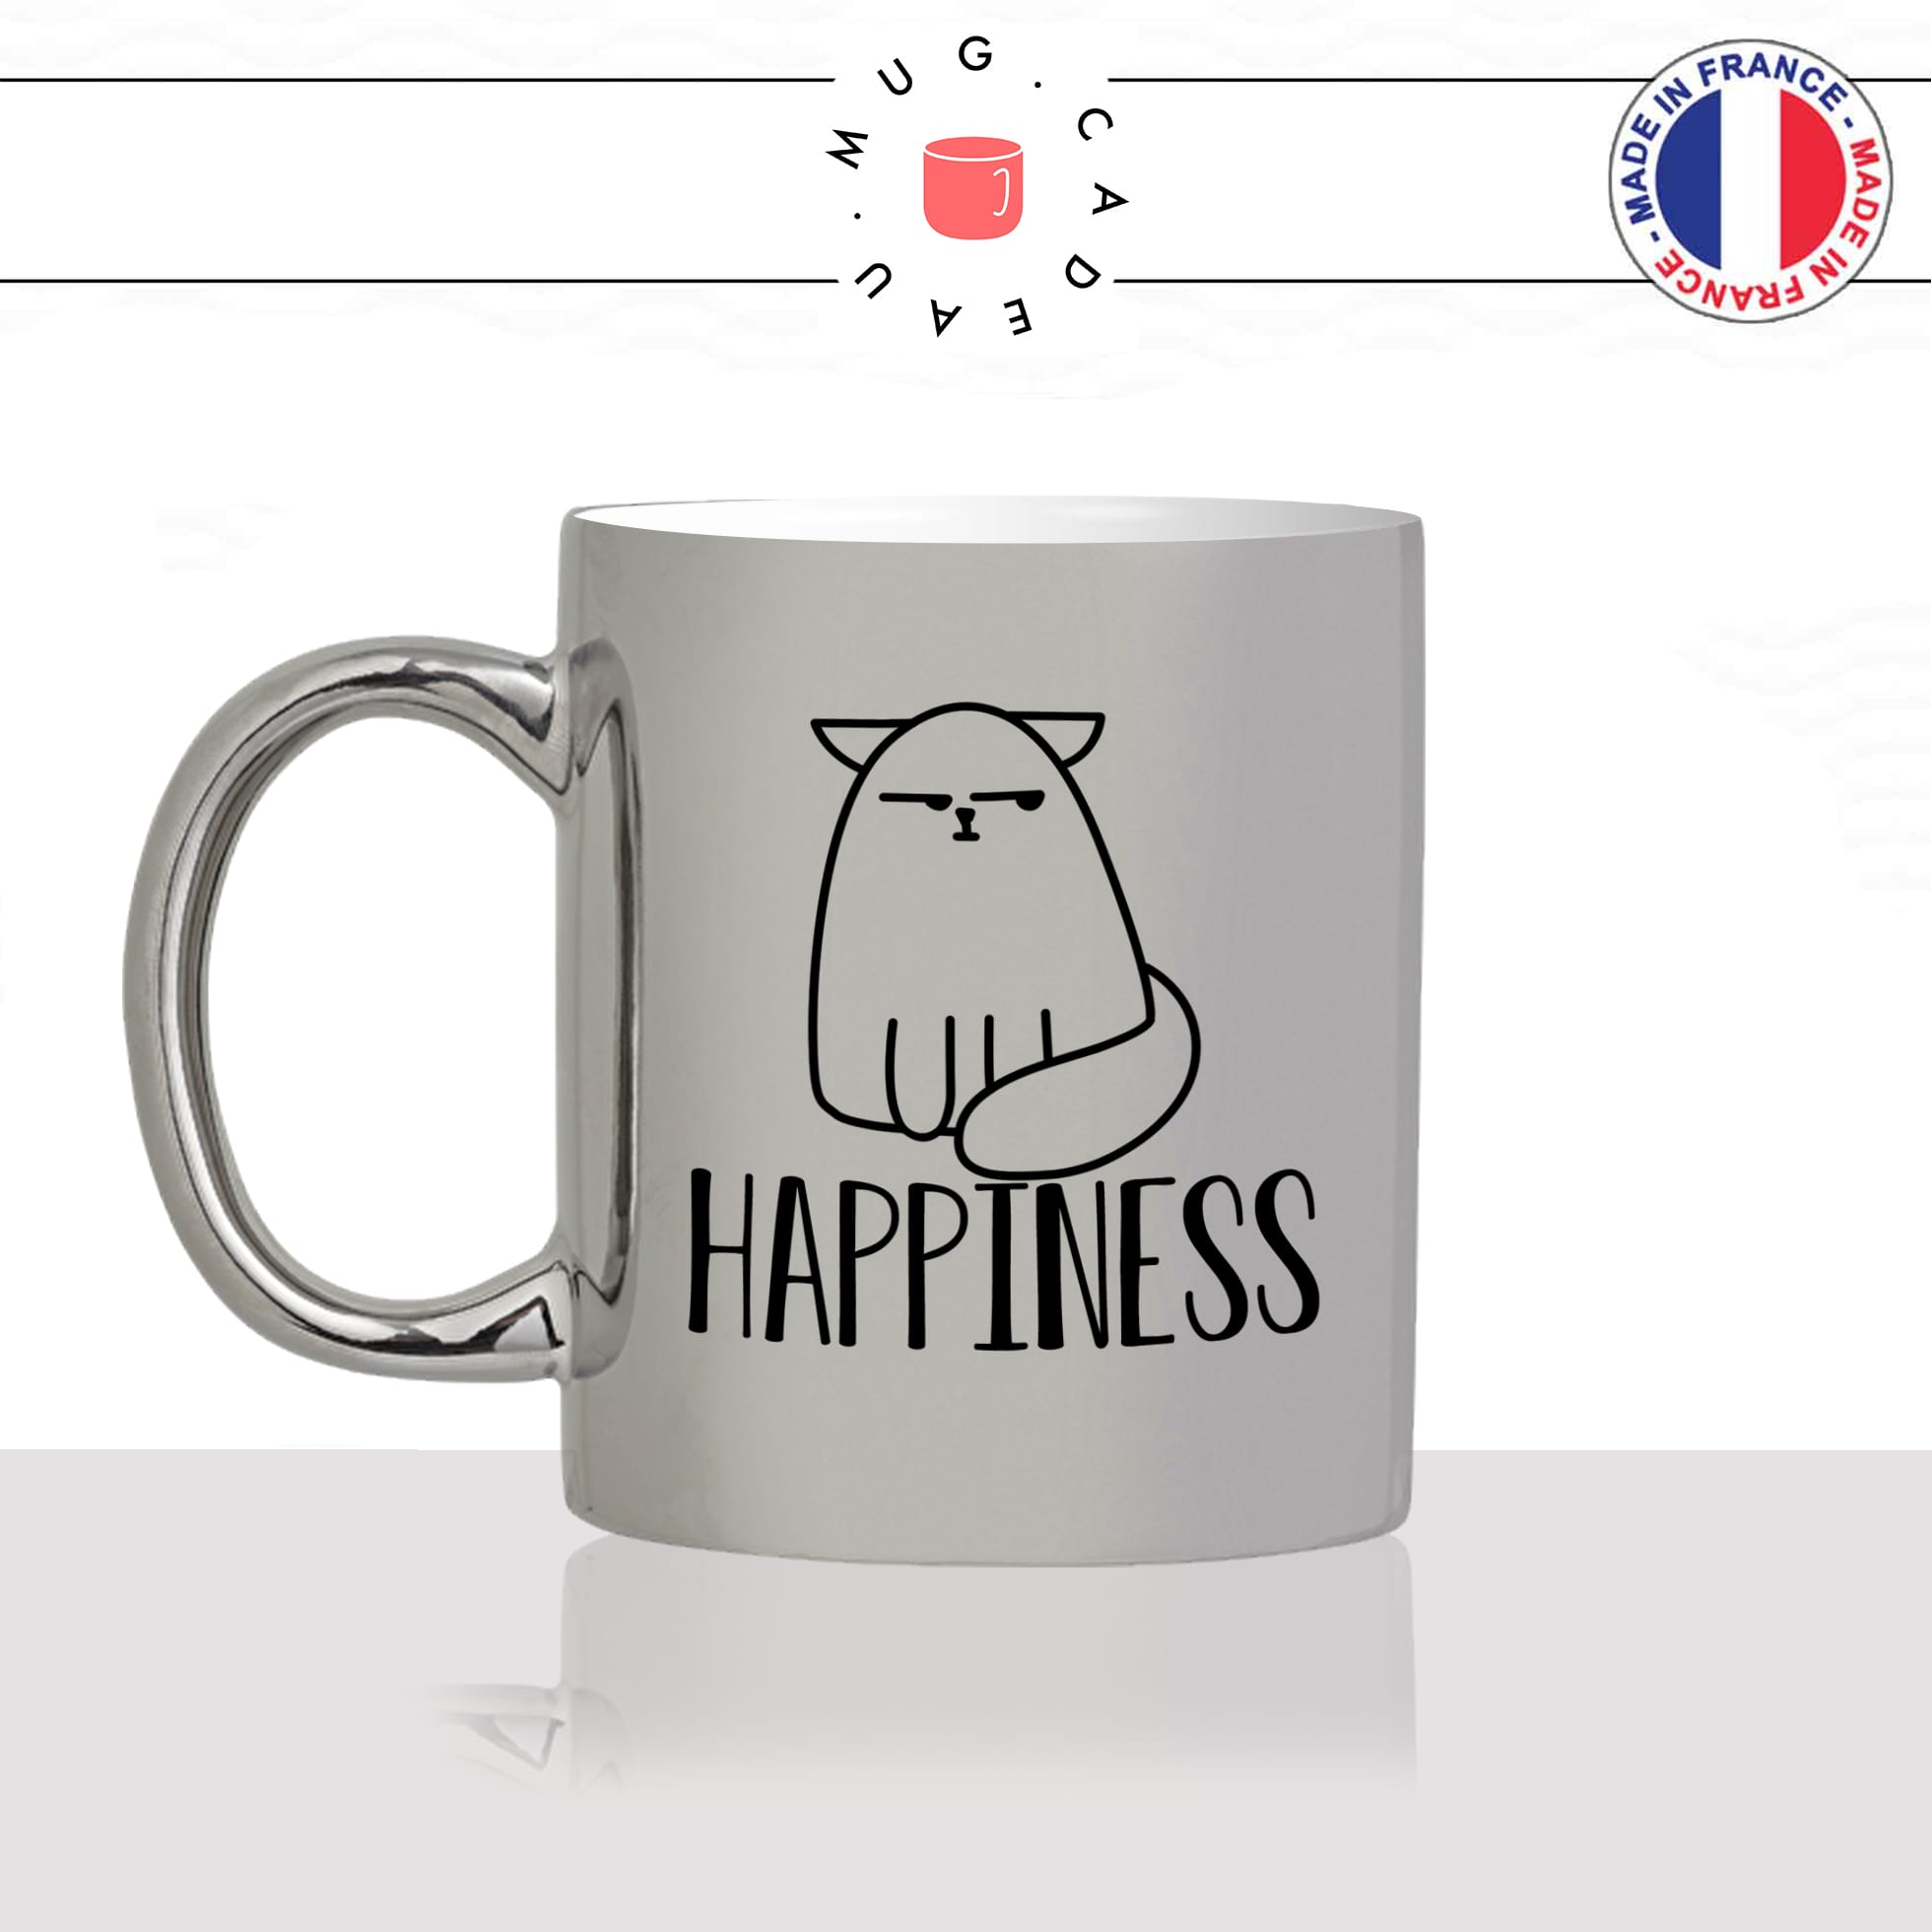 mug-tasse-argenté-silver-happiness-happy-content-humour-chat-mignon-animal-chaton-noir-fun-café-thé-idée-cadeau-original-personnalisé-min